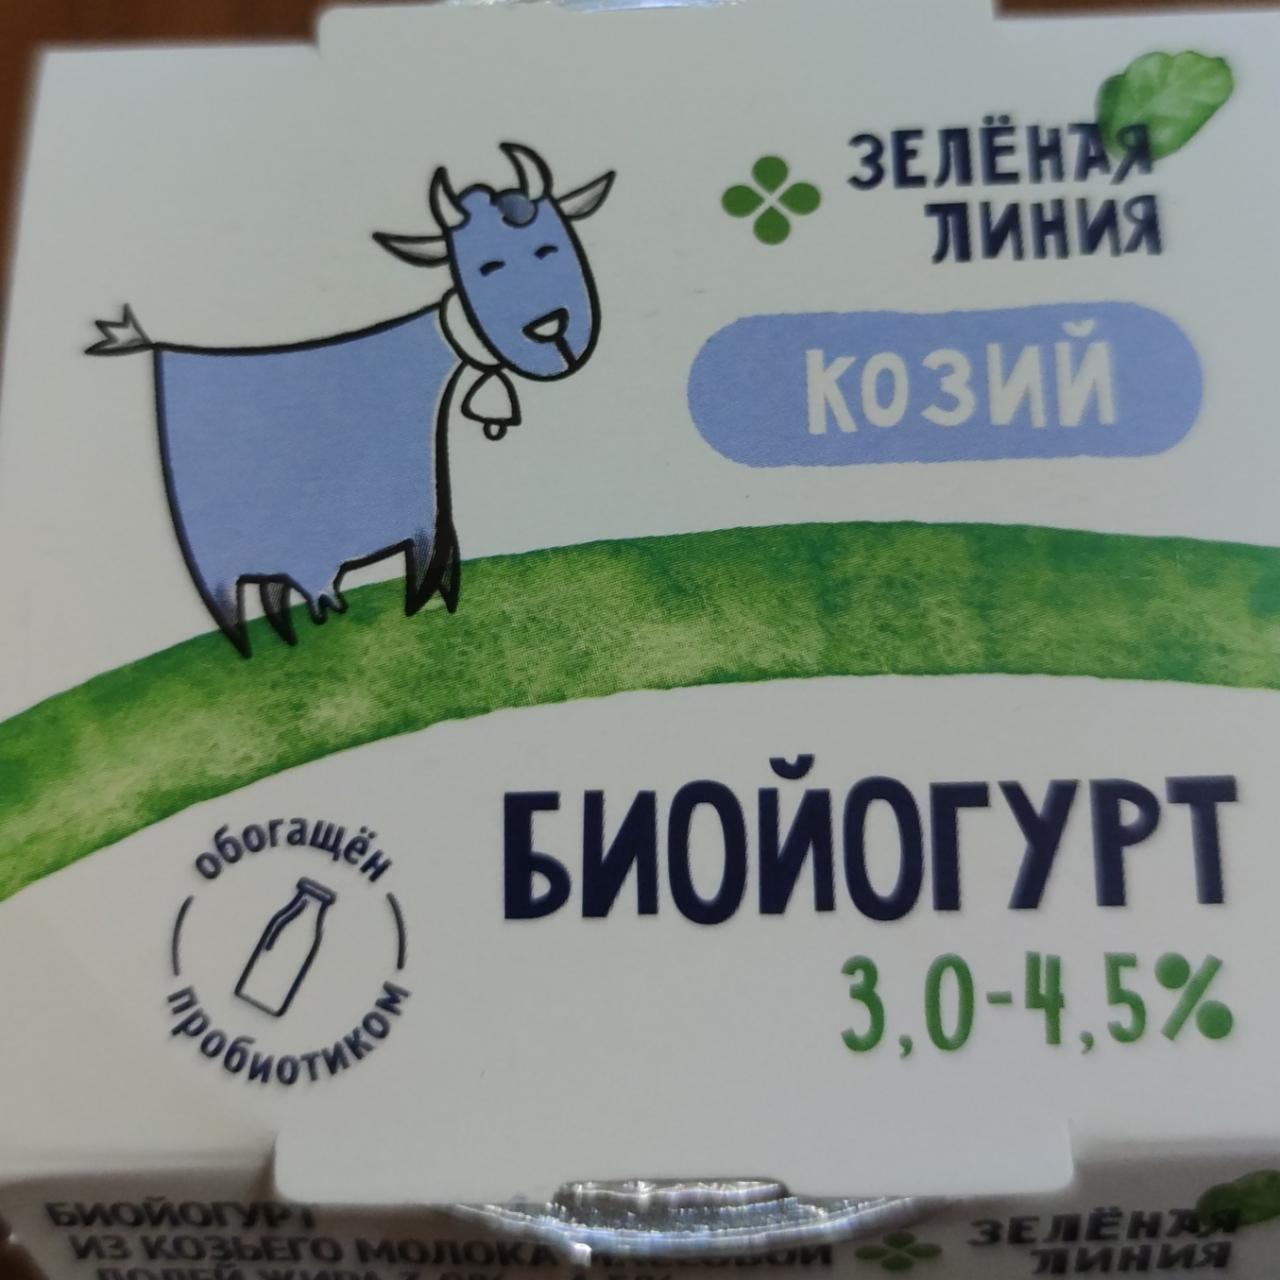 Фото - Биойогурт из козьего молока без наполнителя 3-4.5% Зелёная линия